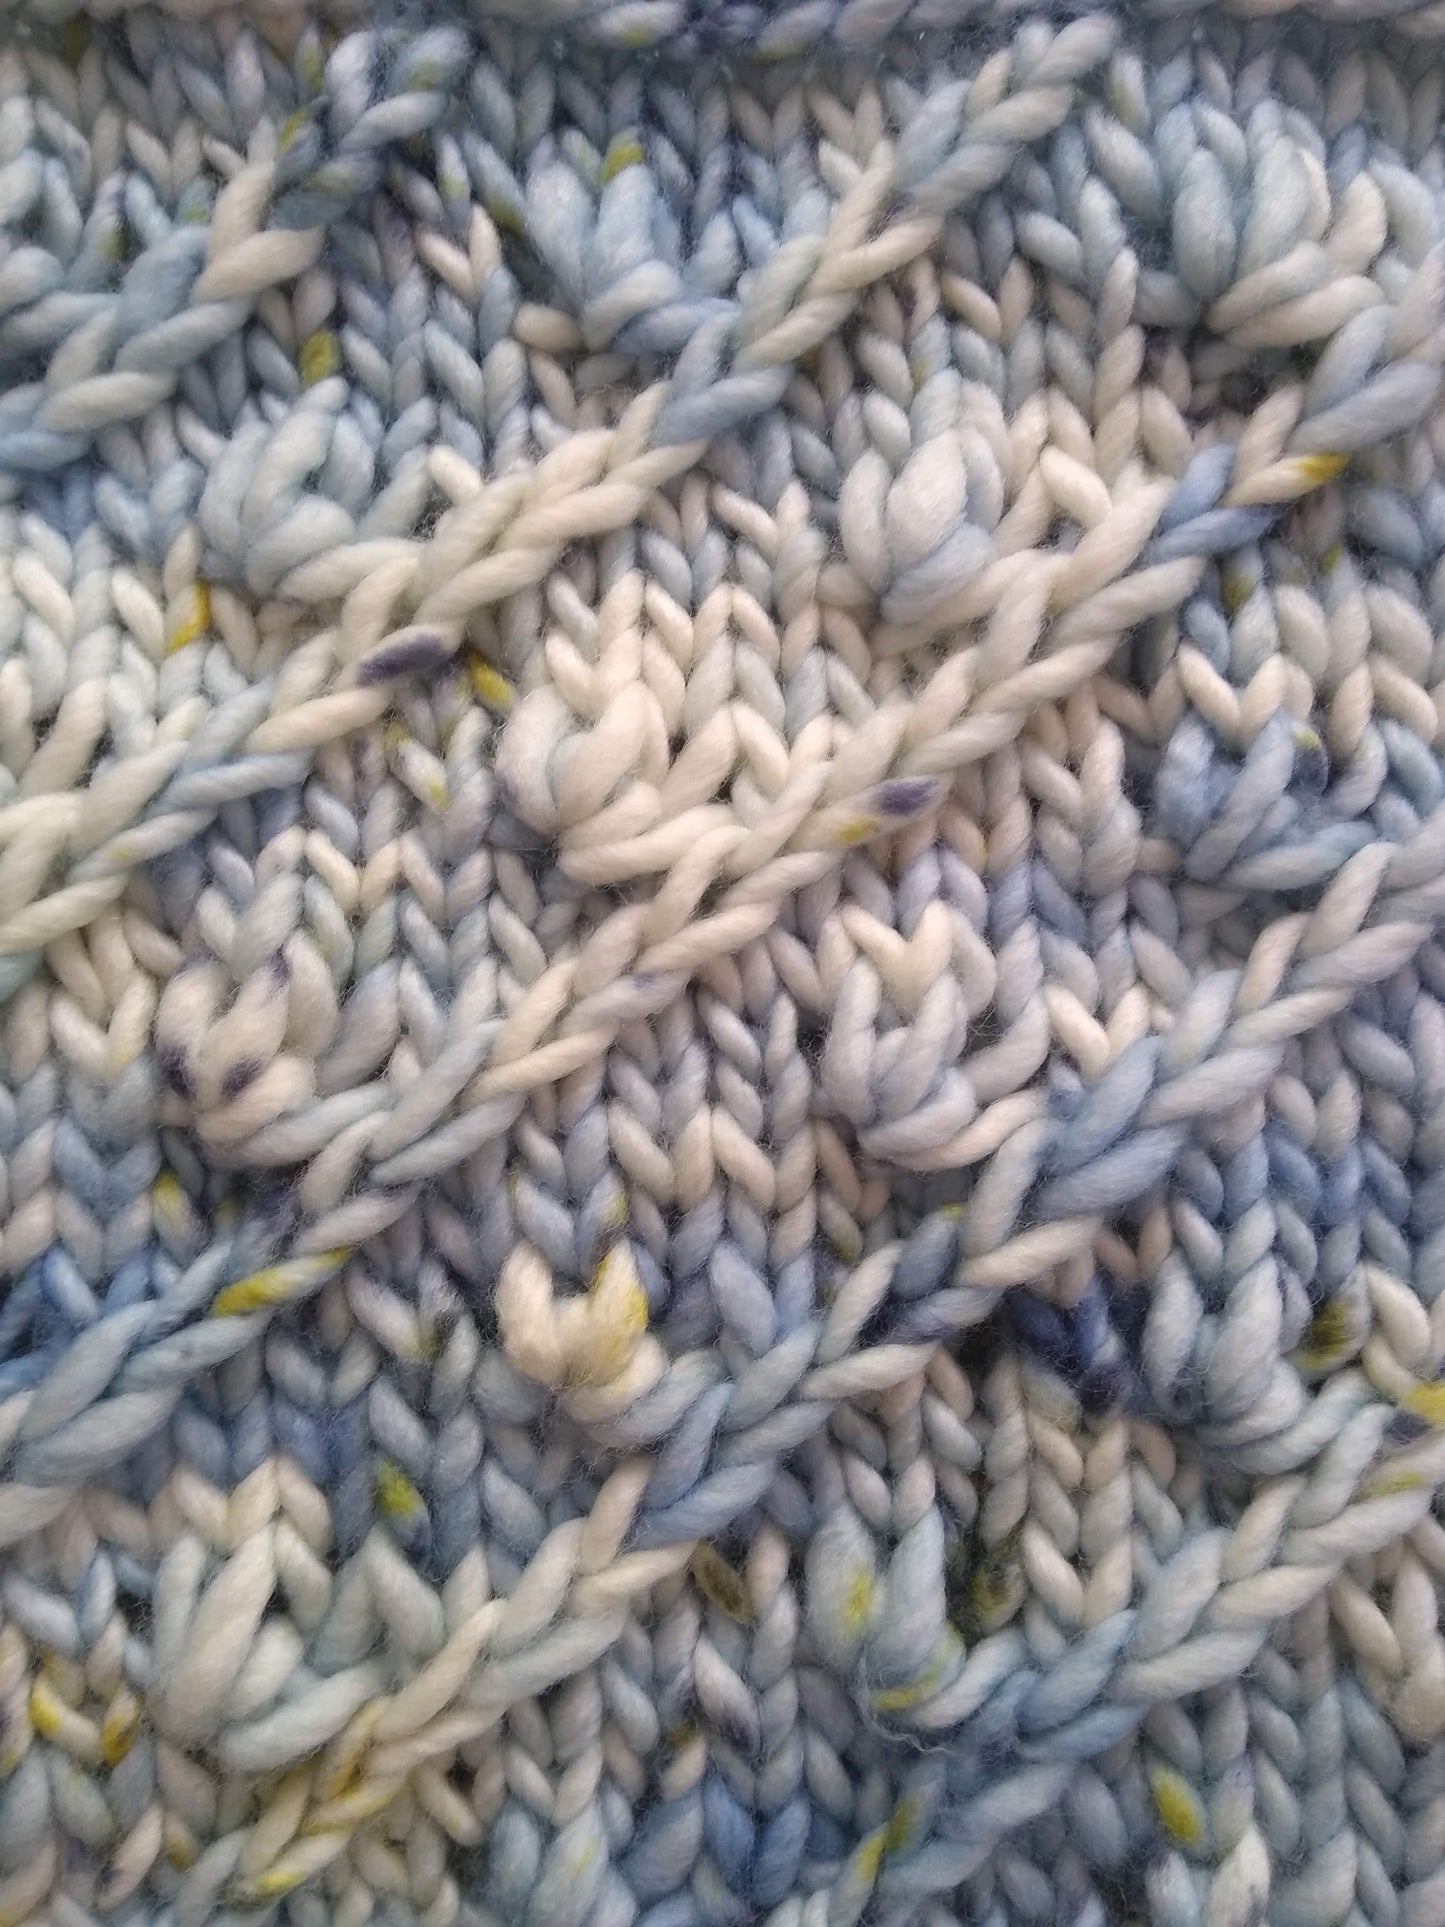 Veela Cowl Knitting Pattern